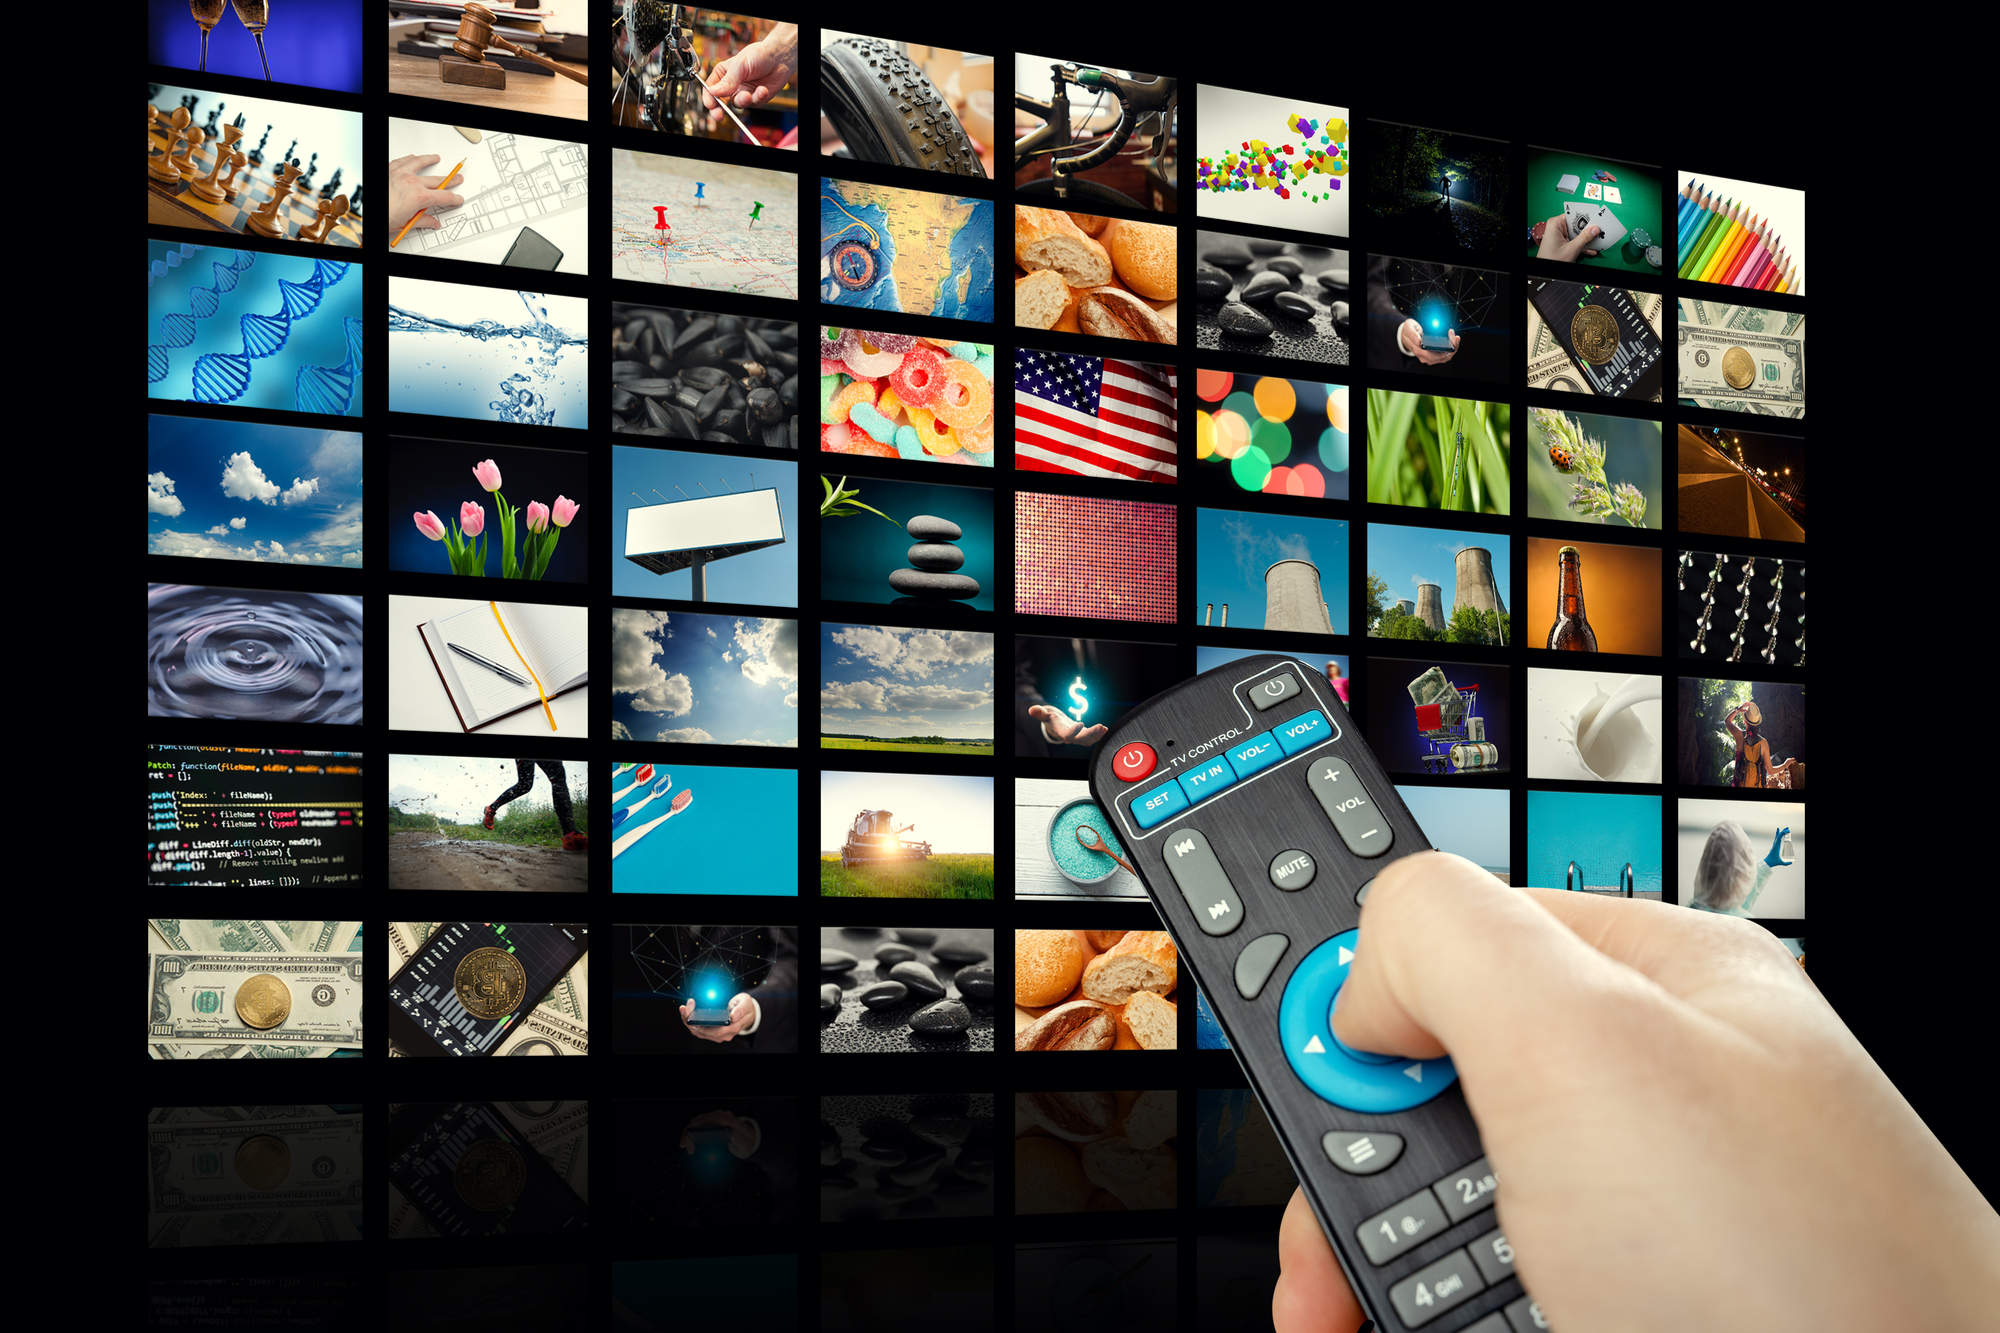 TV-Gerät mit vielen Bildern und Händen eines Mannes mit Fernbedienung auf leerem schwarzen Hintergrund